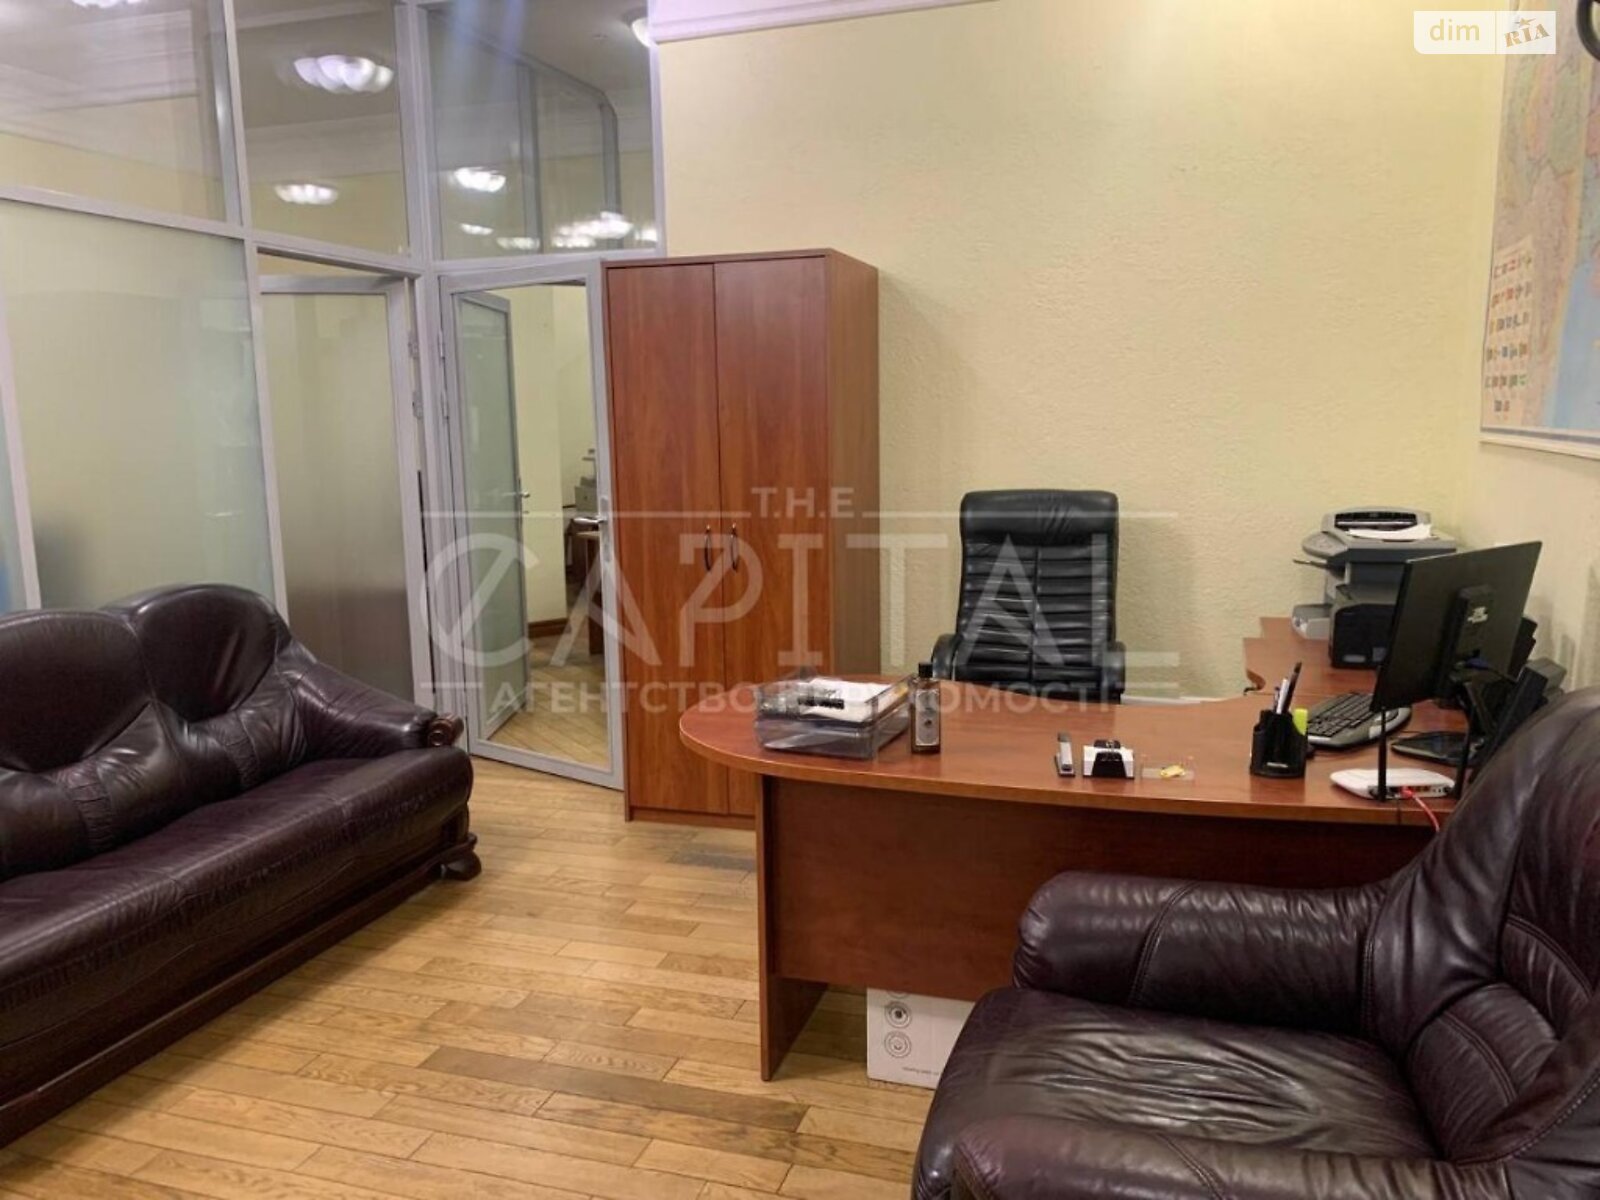 Аренда офисного помещения в Киеве, Липская улица 10, помещений - 5, этаж - 1 фото 1